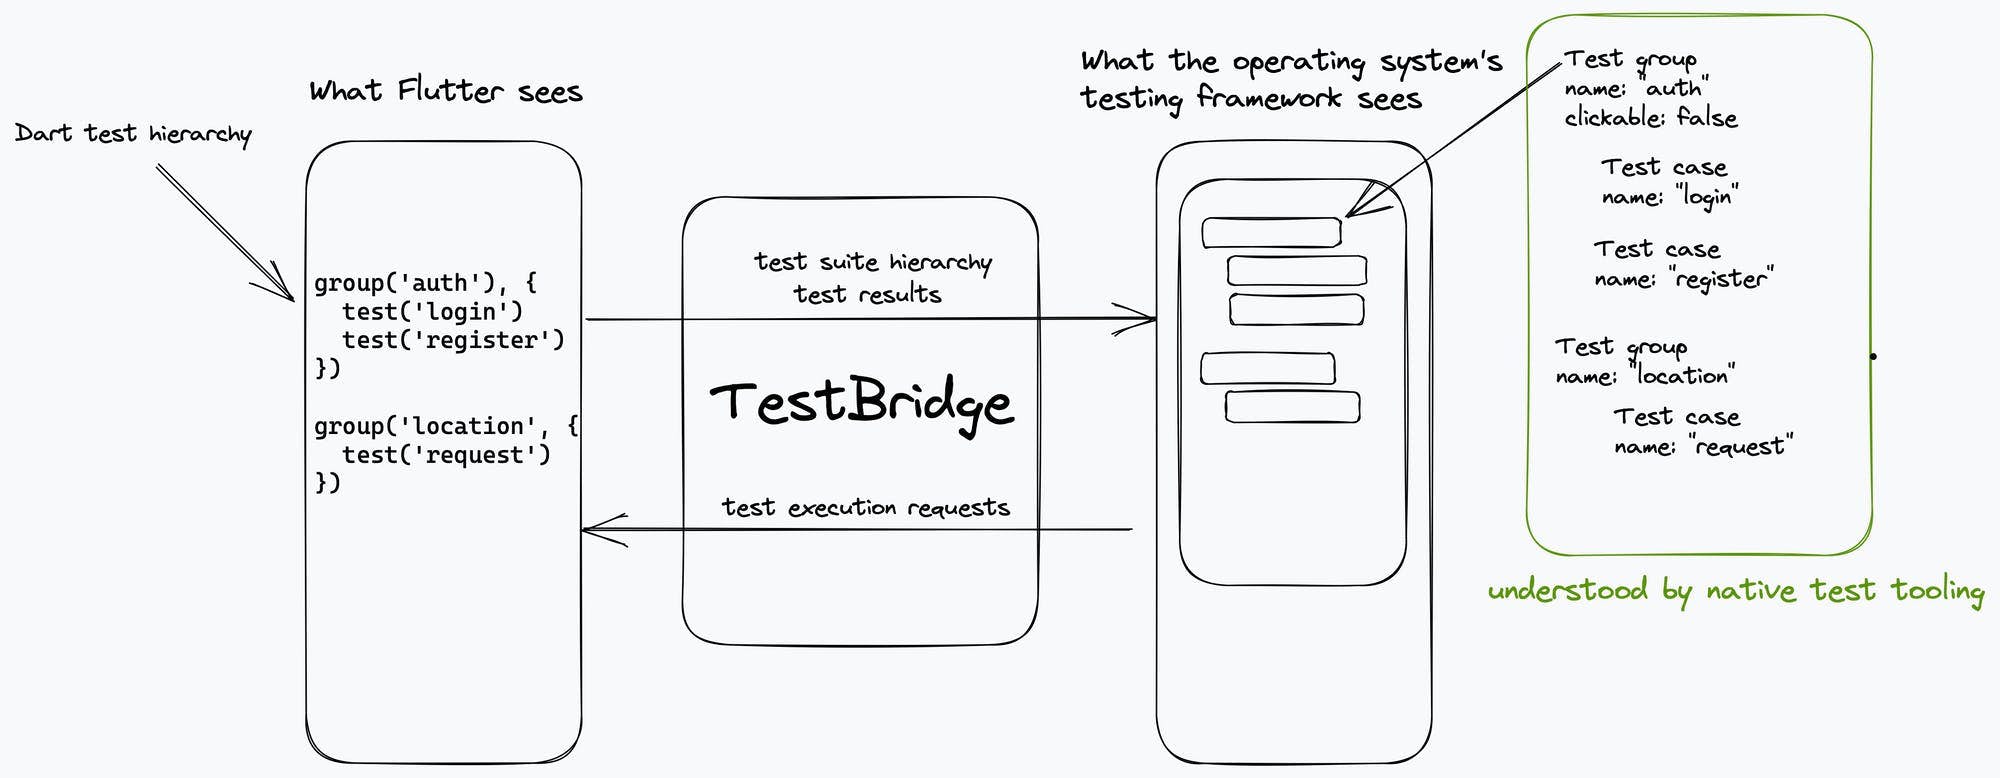 Test bundling process